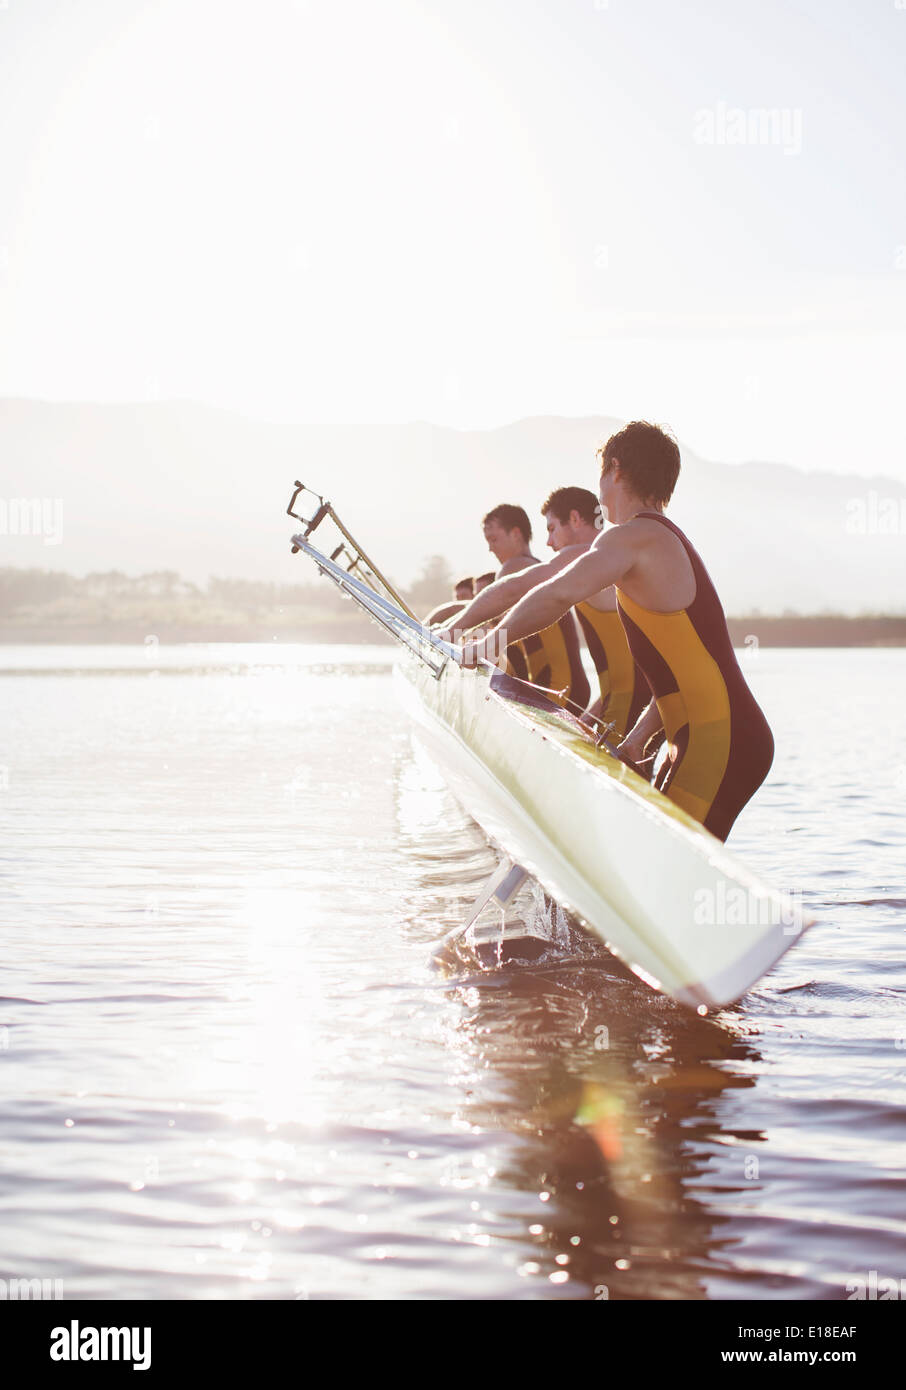 L'équipe d'aviron de placer dans le lac en bateau Banque D'Images